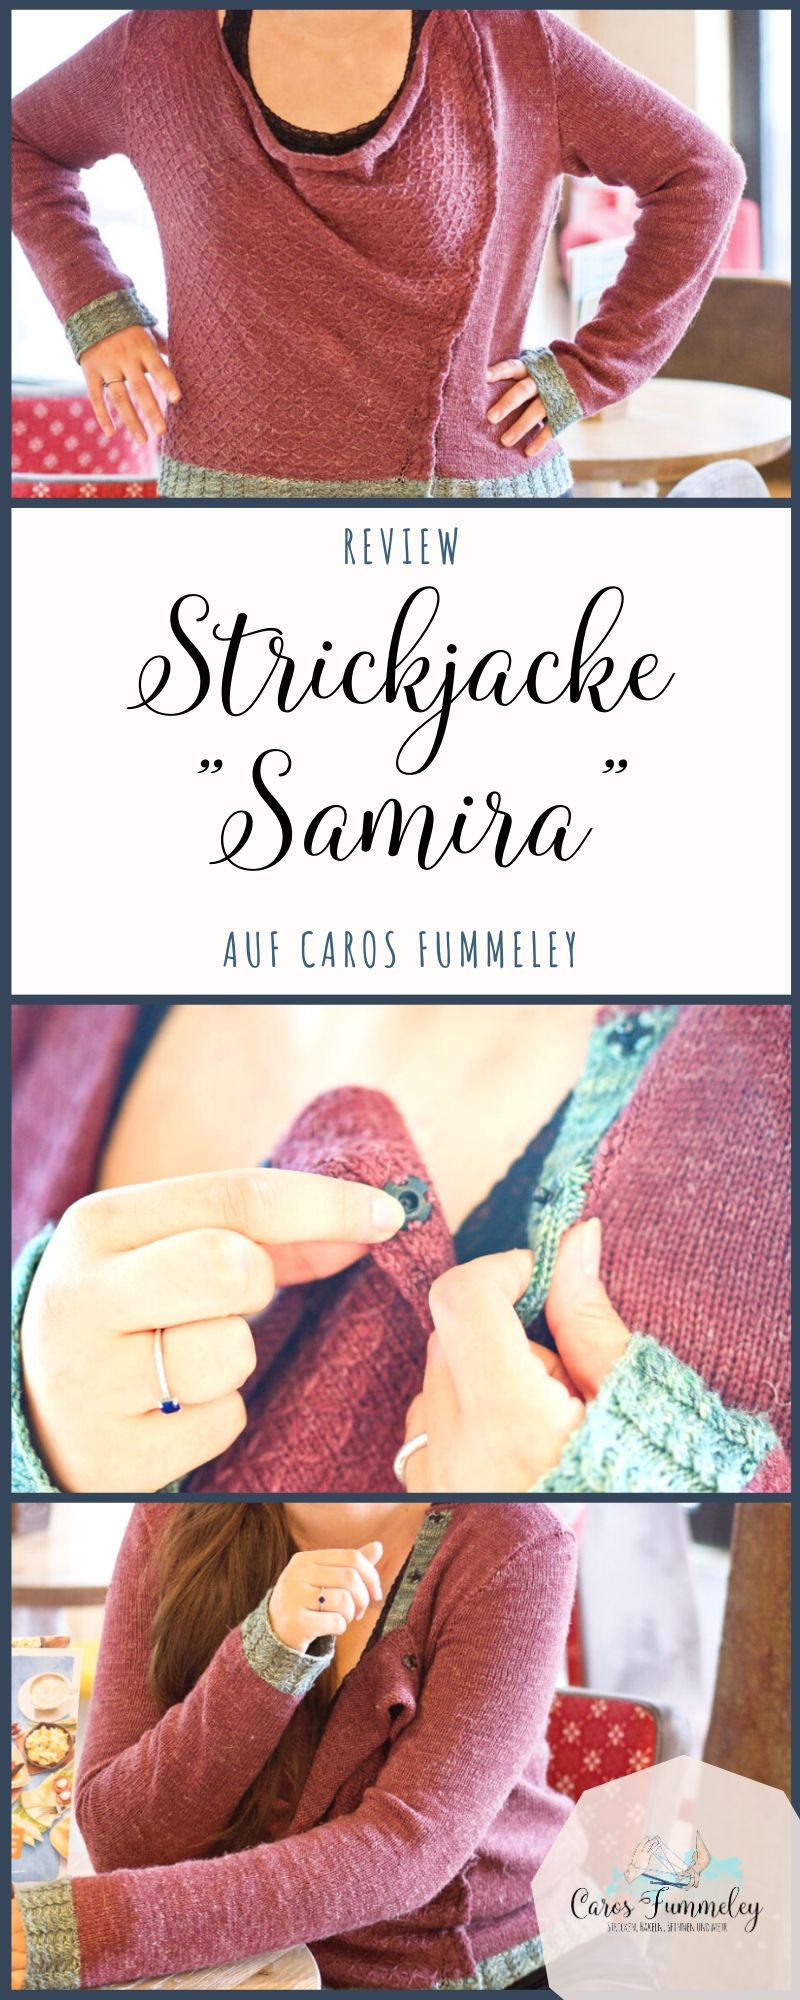 Strickjacke stricken Samira fashionworks3